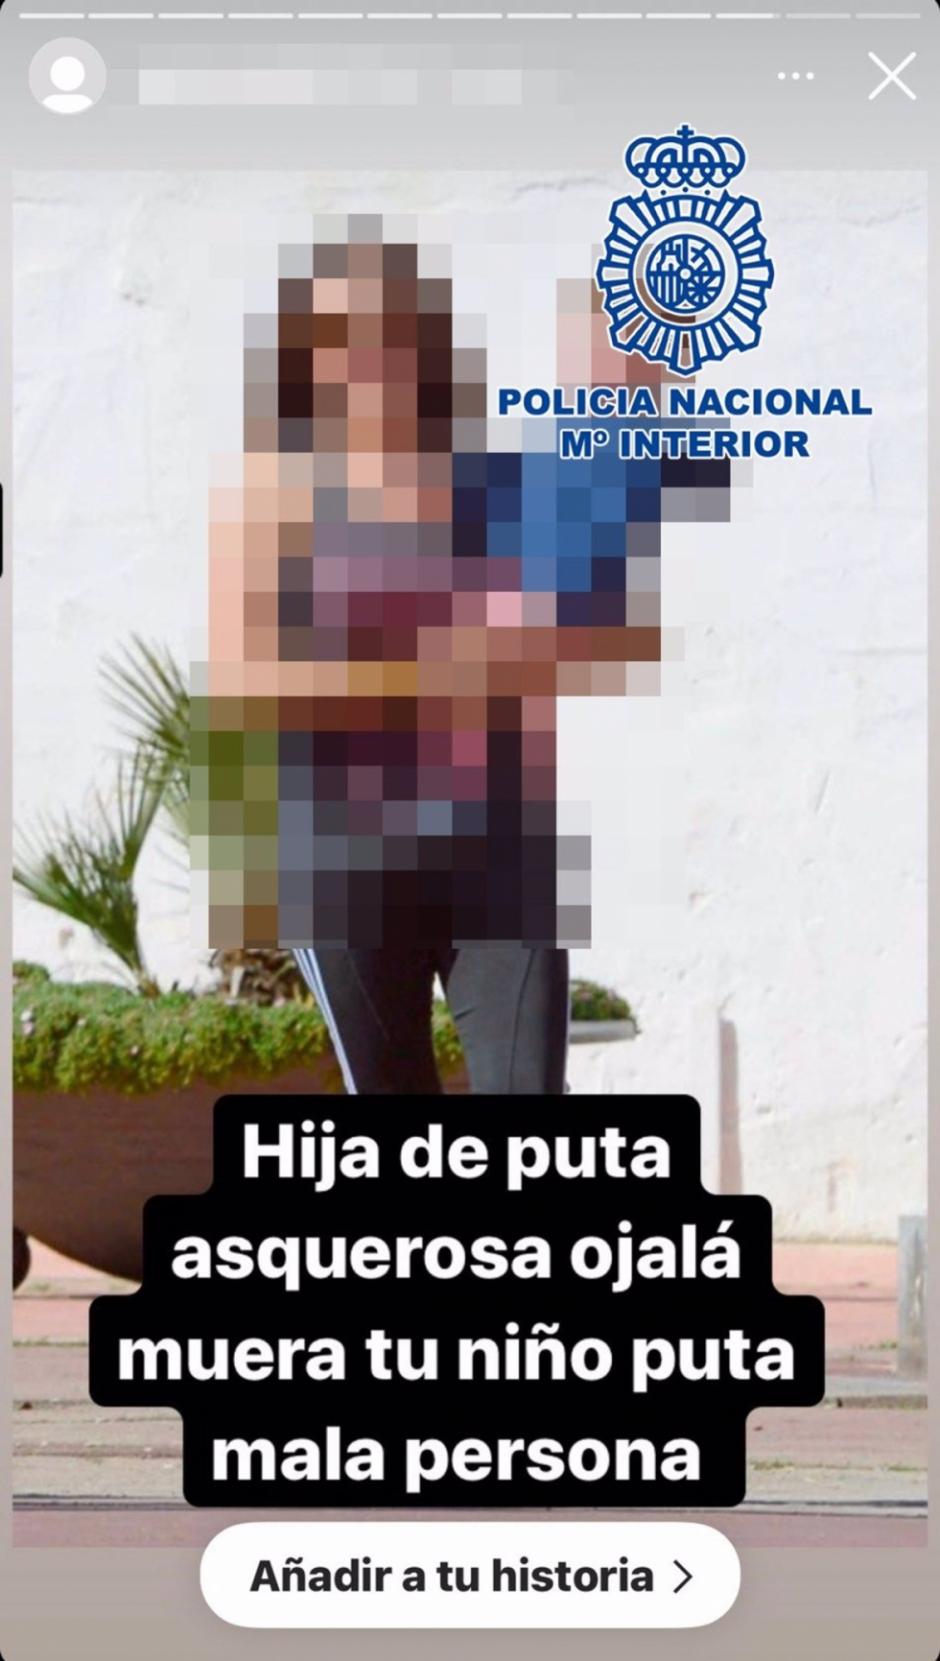 ESPAÑA EUROPA MADRID POLÍTICA
POLICÍA NACIONAL